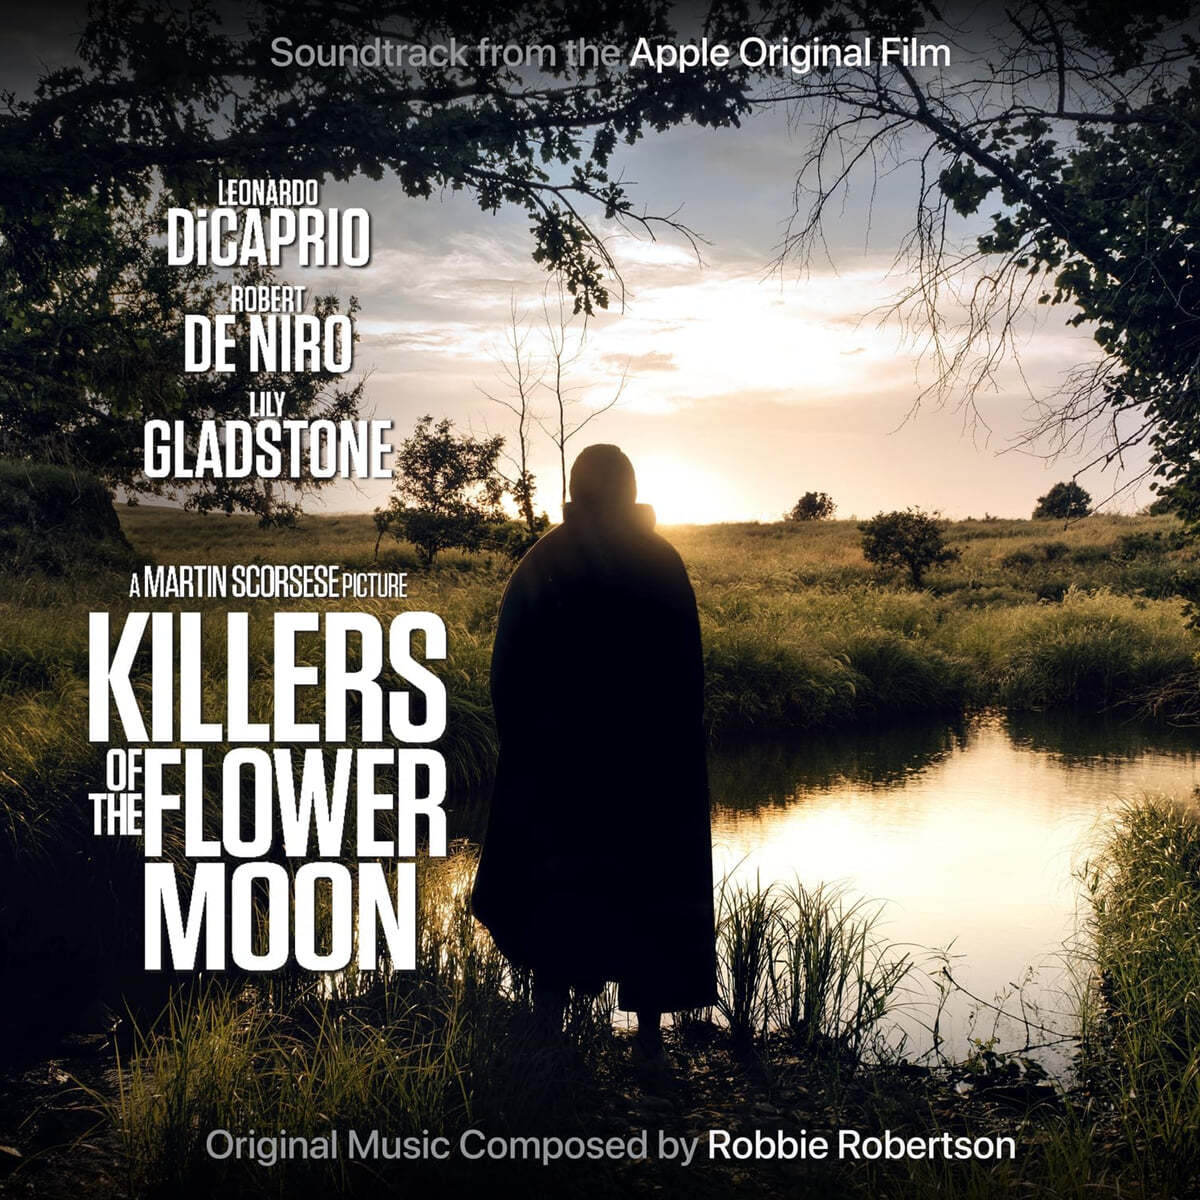 플라워 킬링 문 영화음악 (Killers of the Flower Moon OST by Robbie Robertson)